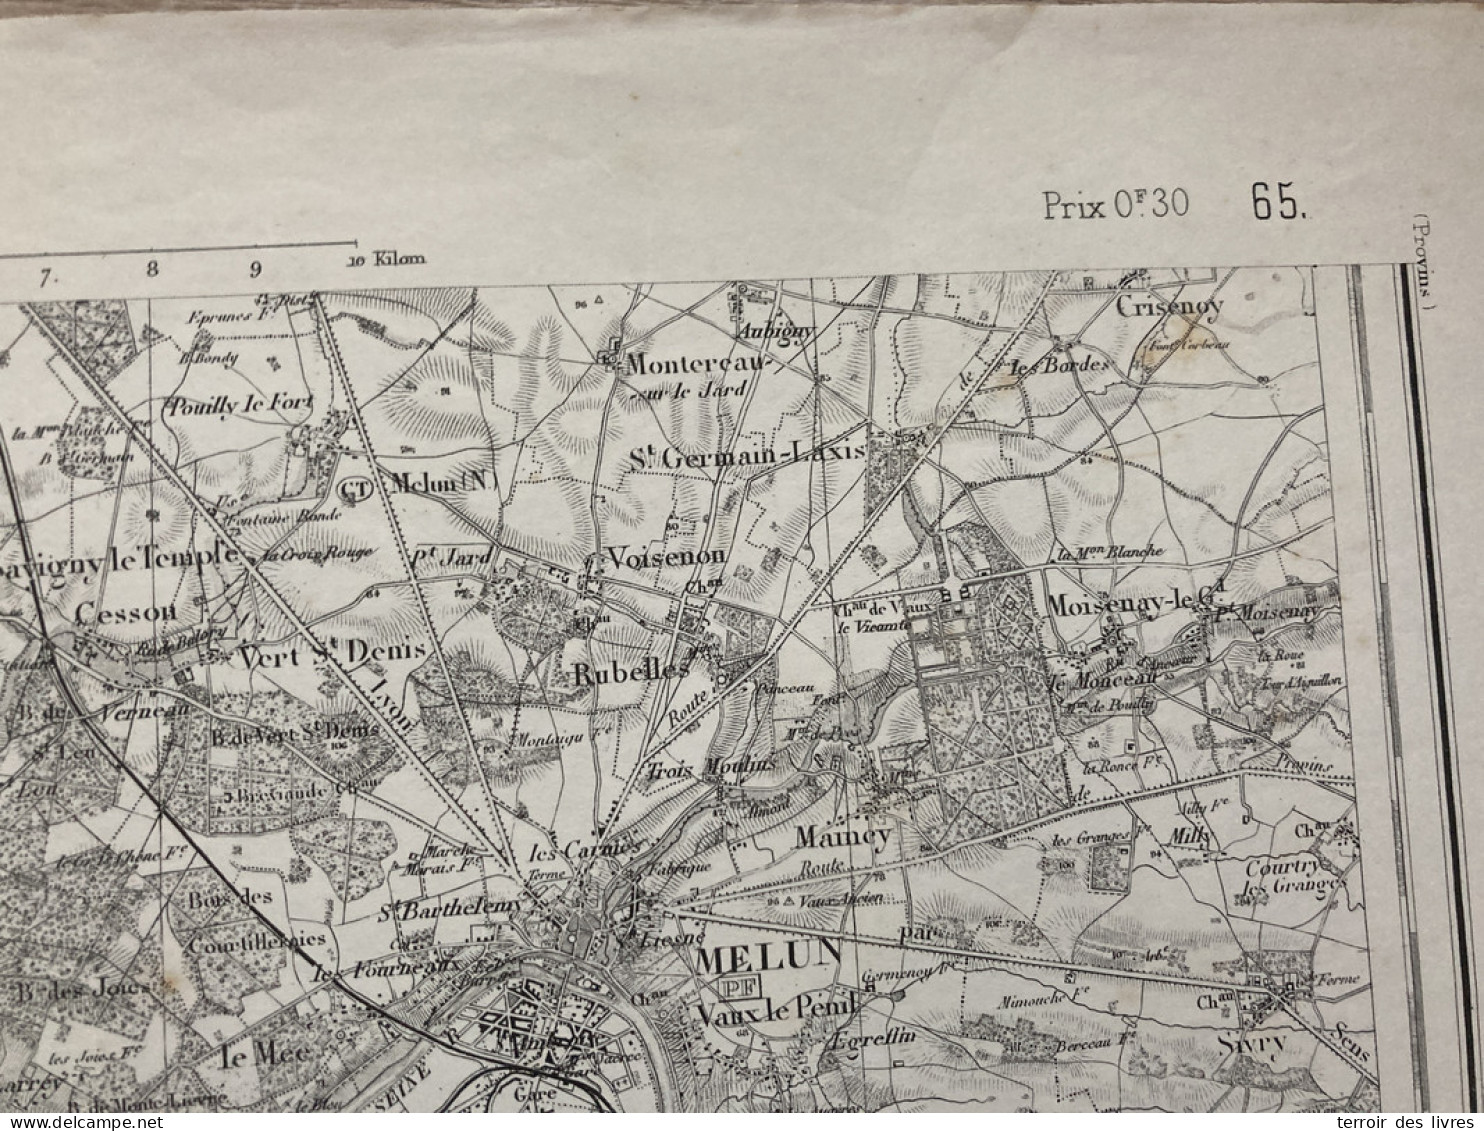 Carte état Major MELUN S.E. 1888 35x54cm PRINGY BOISSISE-LE-ROI PONTHIERRY BOISSISE-LA-BERTRAND BOISSETTES ST-SAUVEUR-SU - Landkarten